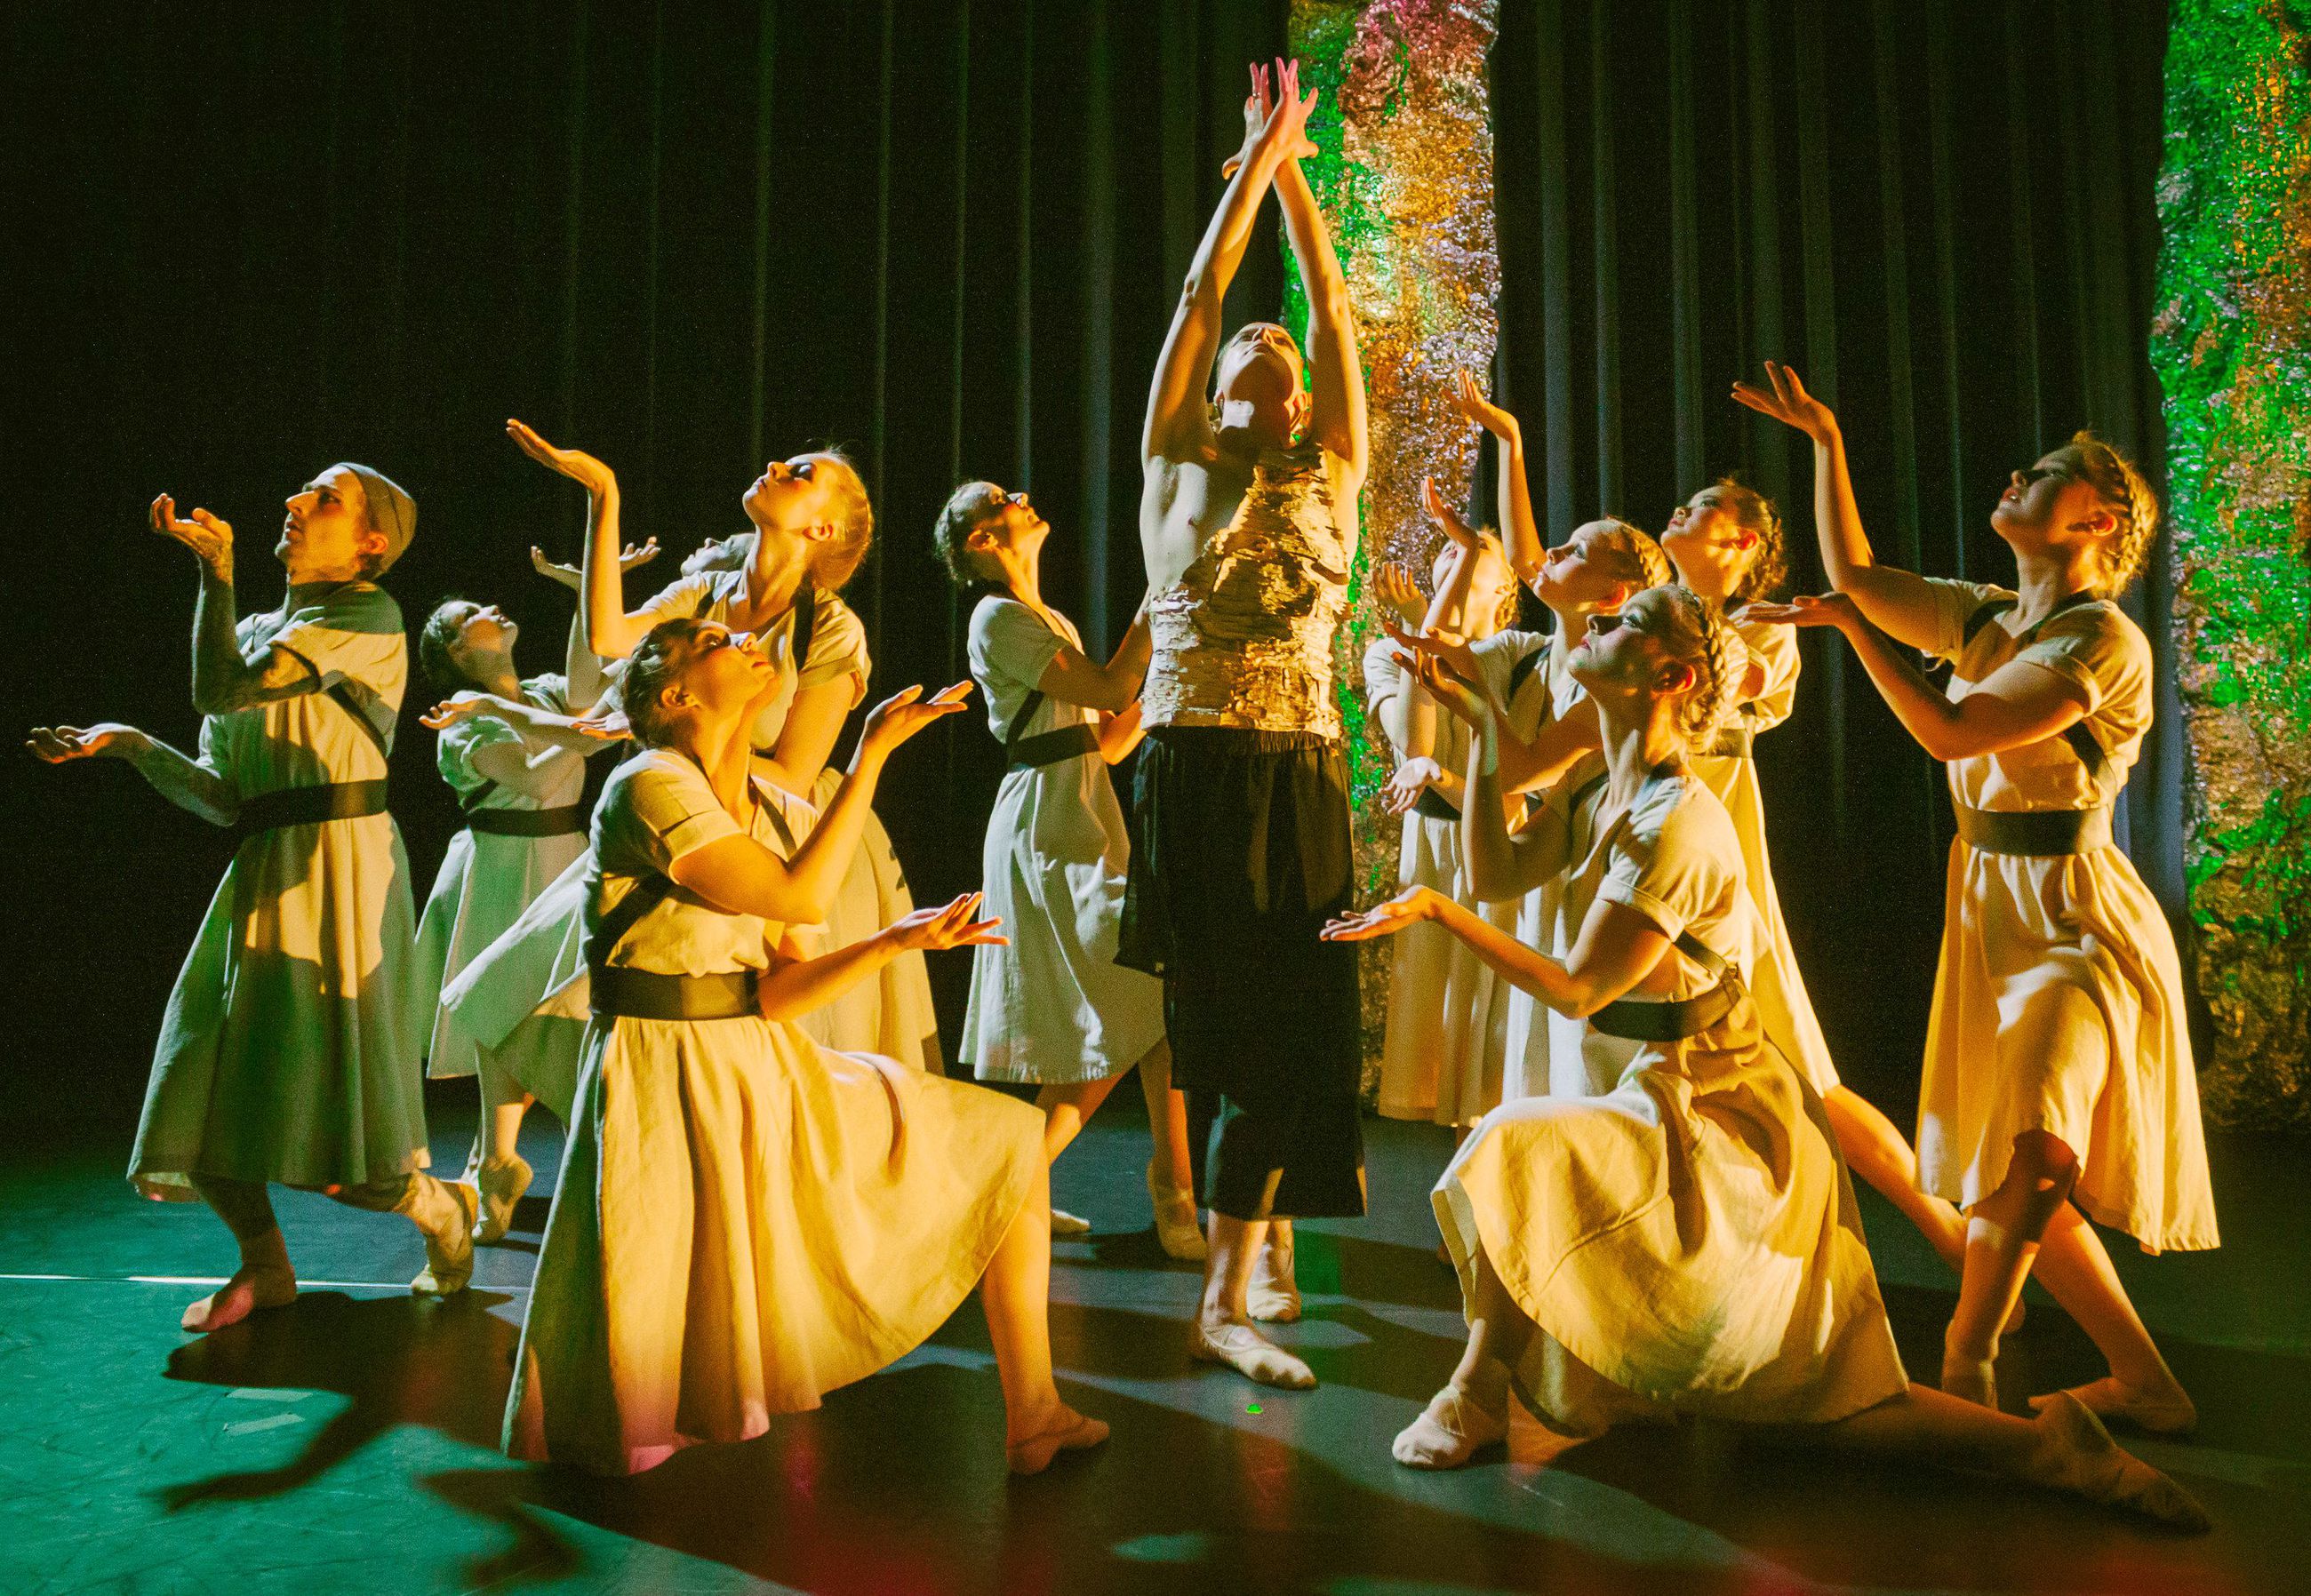 Balettituotanto Tenhon uusin kantaesitys Mahla edustaa oululaisen balettikulttuurin elinvoimaa. Baletissa esiintyy yhteensä 12 taitavaa baletin aikuisharrastajaa ja tanssin ammattilaista. Kuvassa keskellä Koivun hengen roolissa tanssiva Jouni Uosukainen.